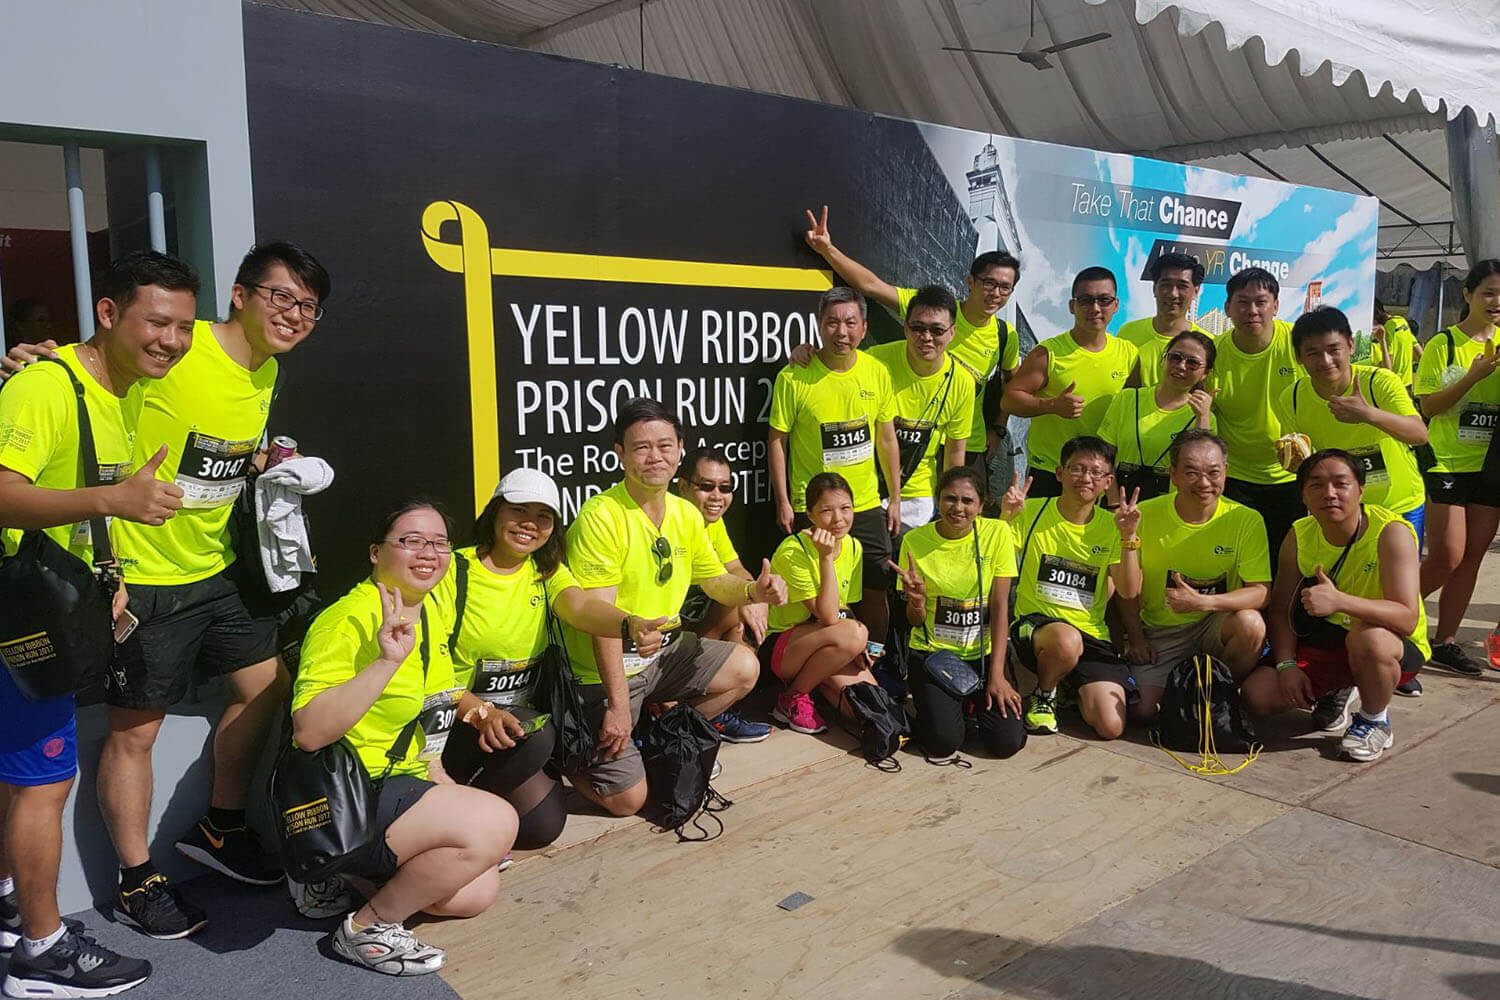 2017 (Sep) Yellow Ribbon Prison Run